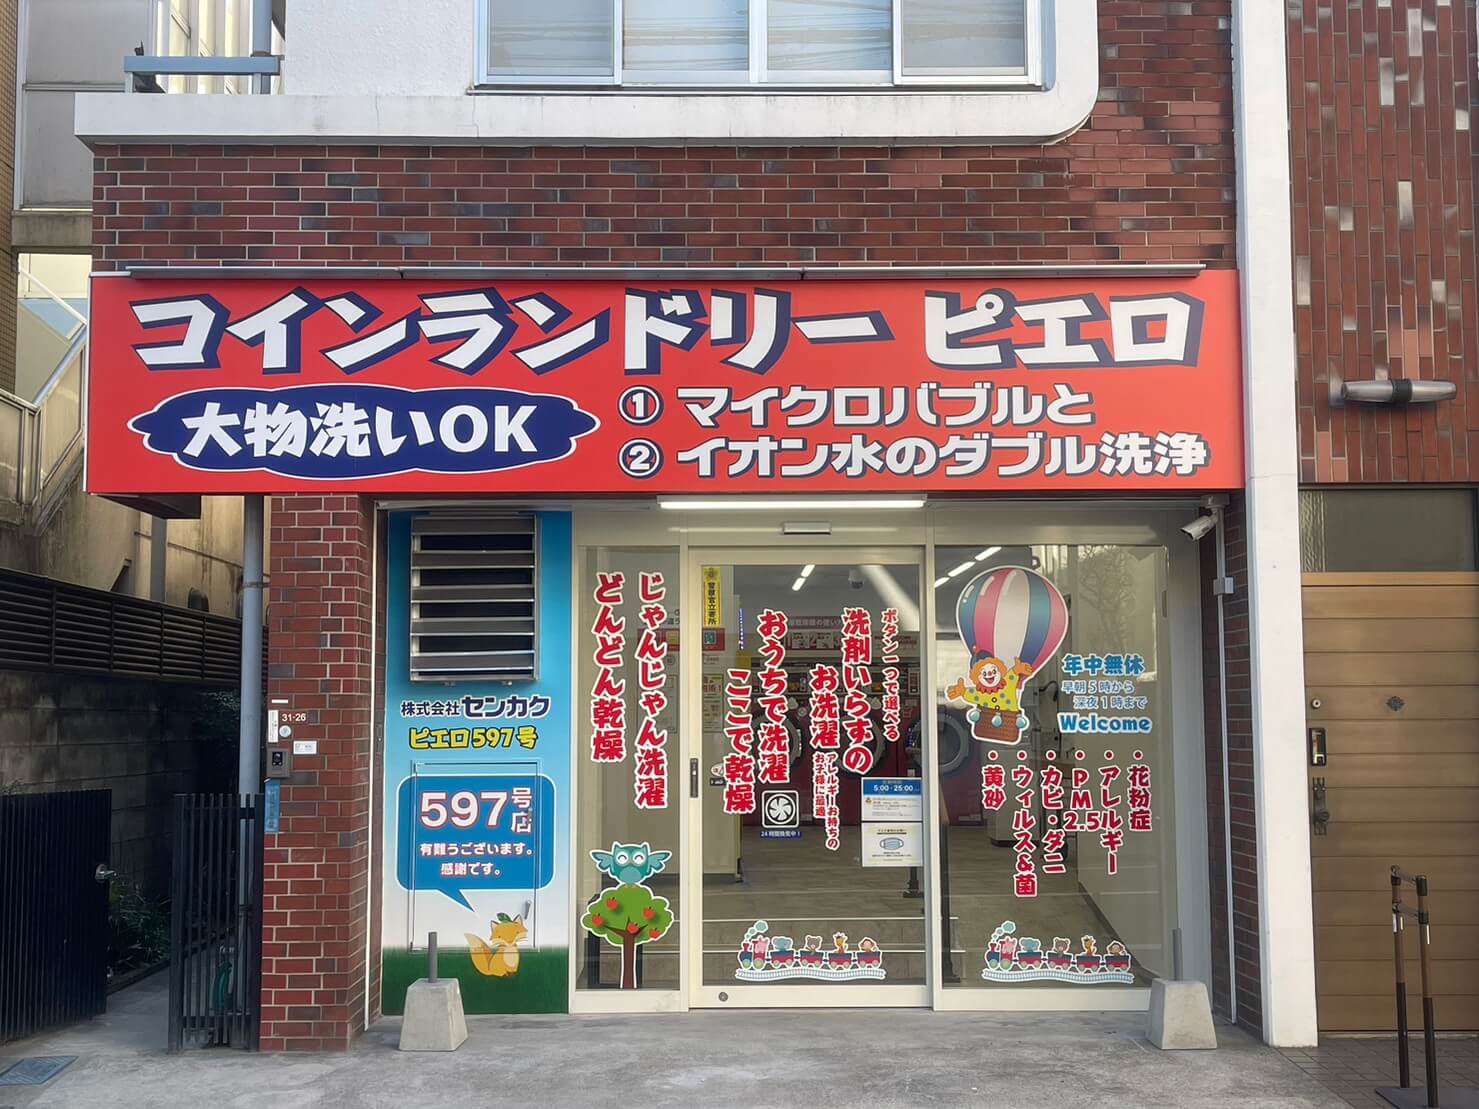 コインランドリー/ピエロ 597号 上井草店の写真